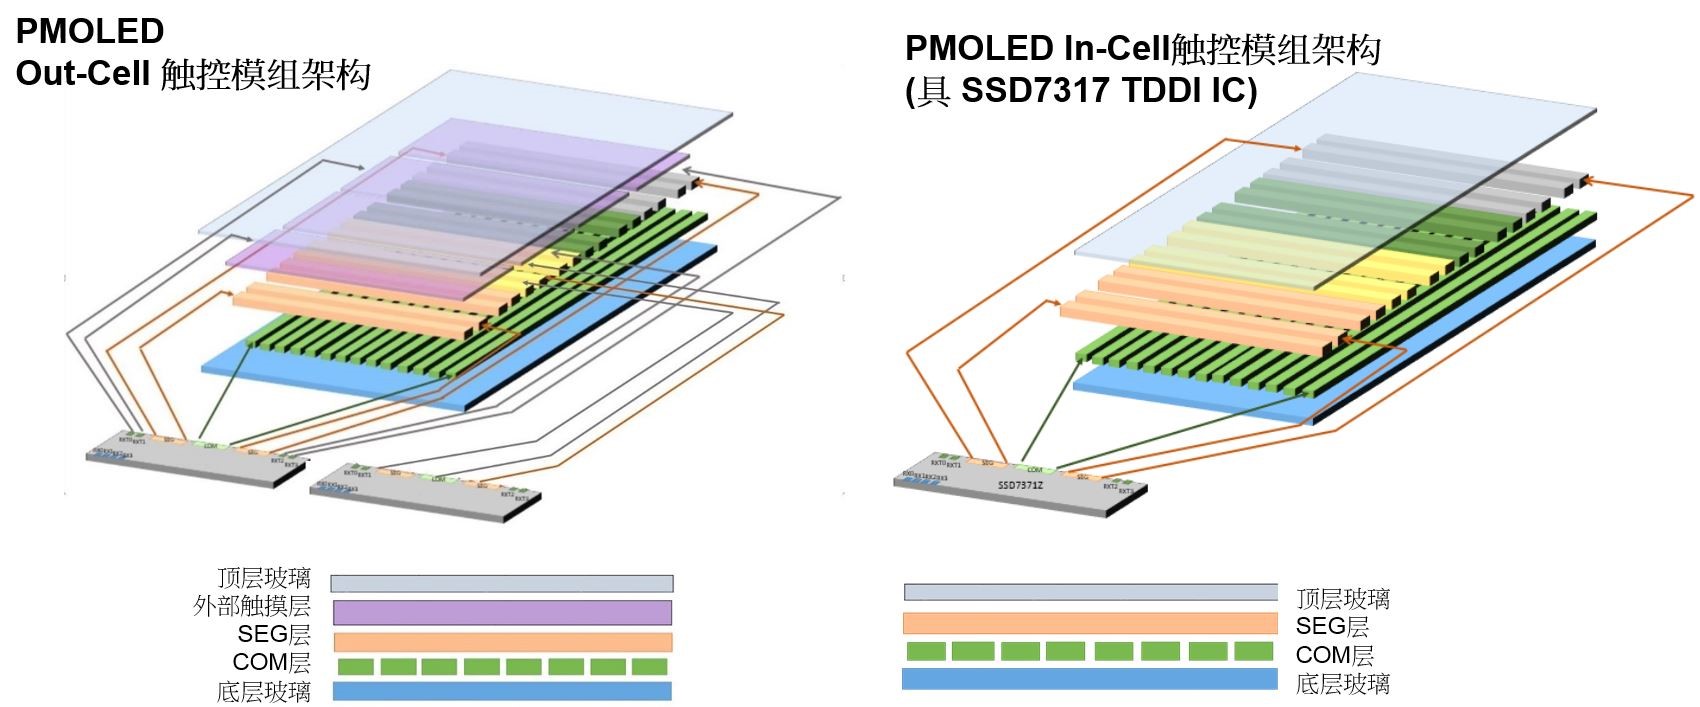 晶门科技引发PMOLED技术革新，推出全球首颗 PMOLED TDDI芯片